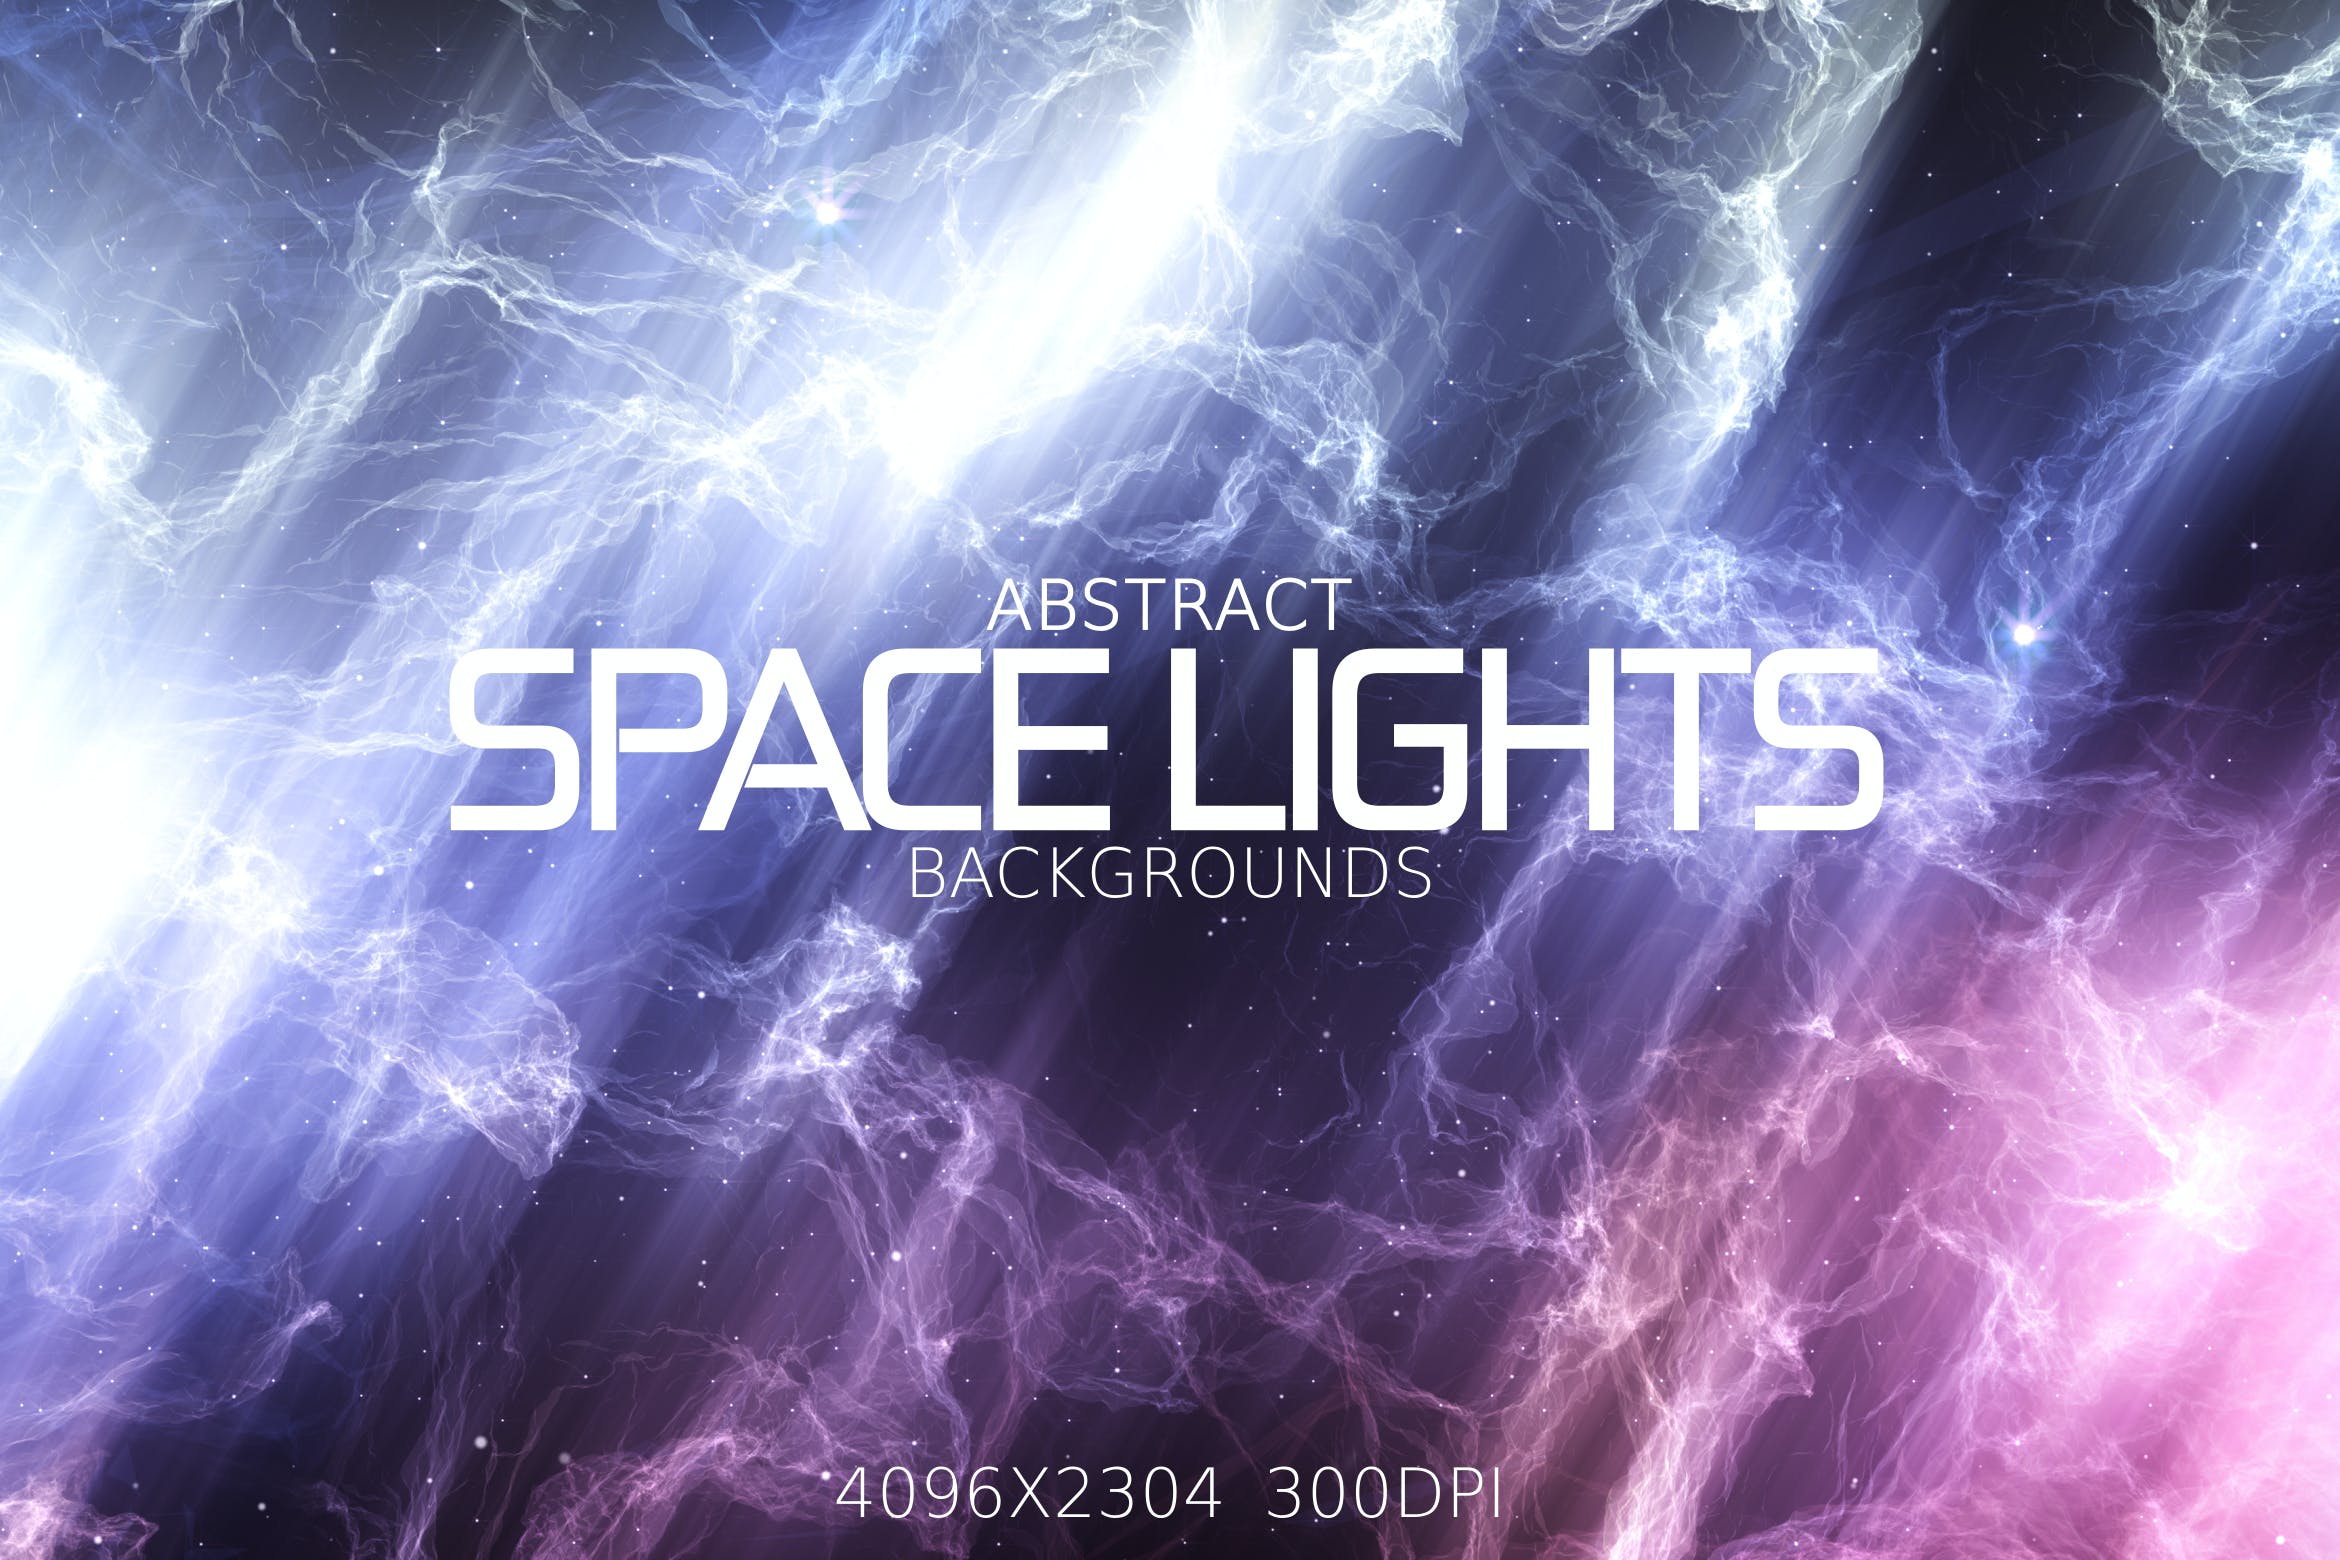 抽象灯光背景图素材 Abstract Space Lights Backgrounds设计素材模板